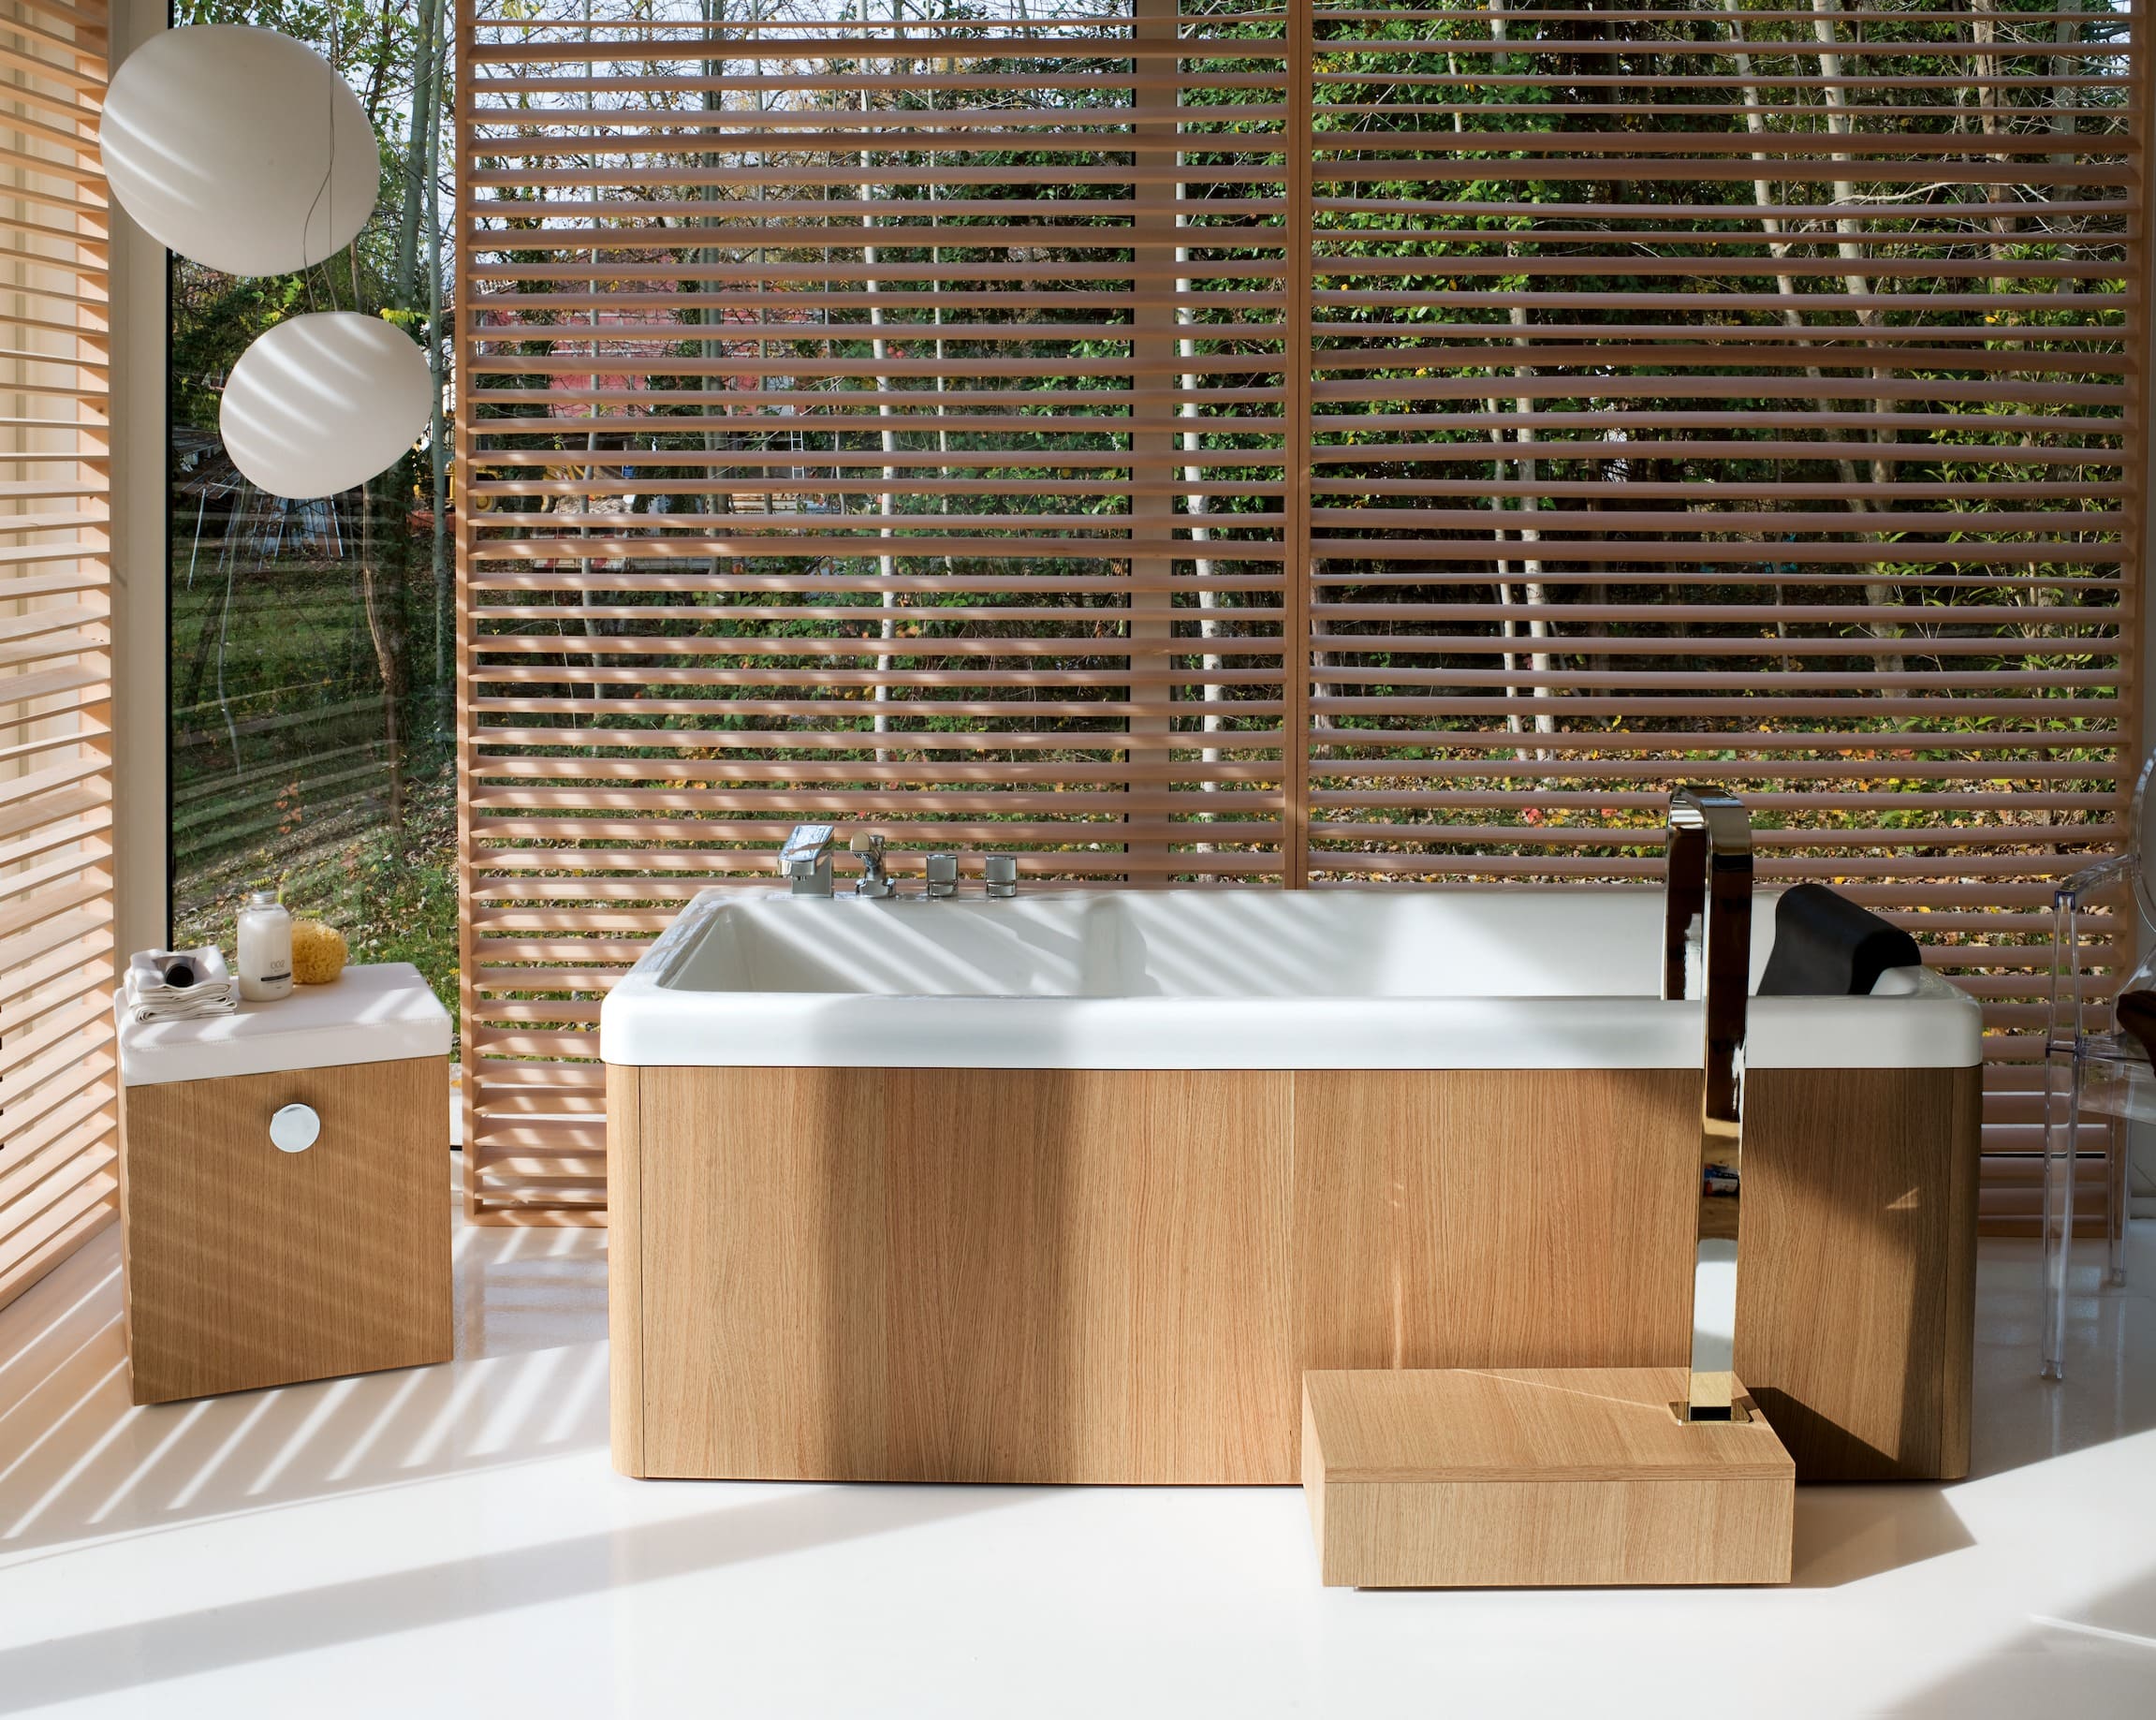 19 Stunning Bamboo Bathroom Ideas - 85